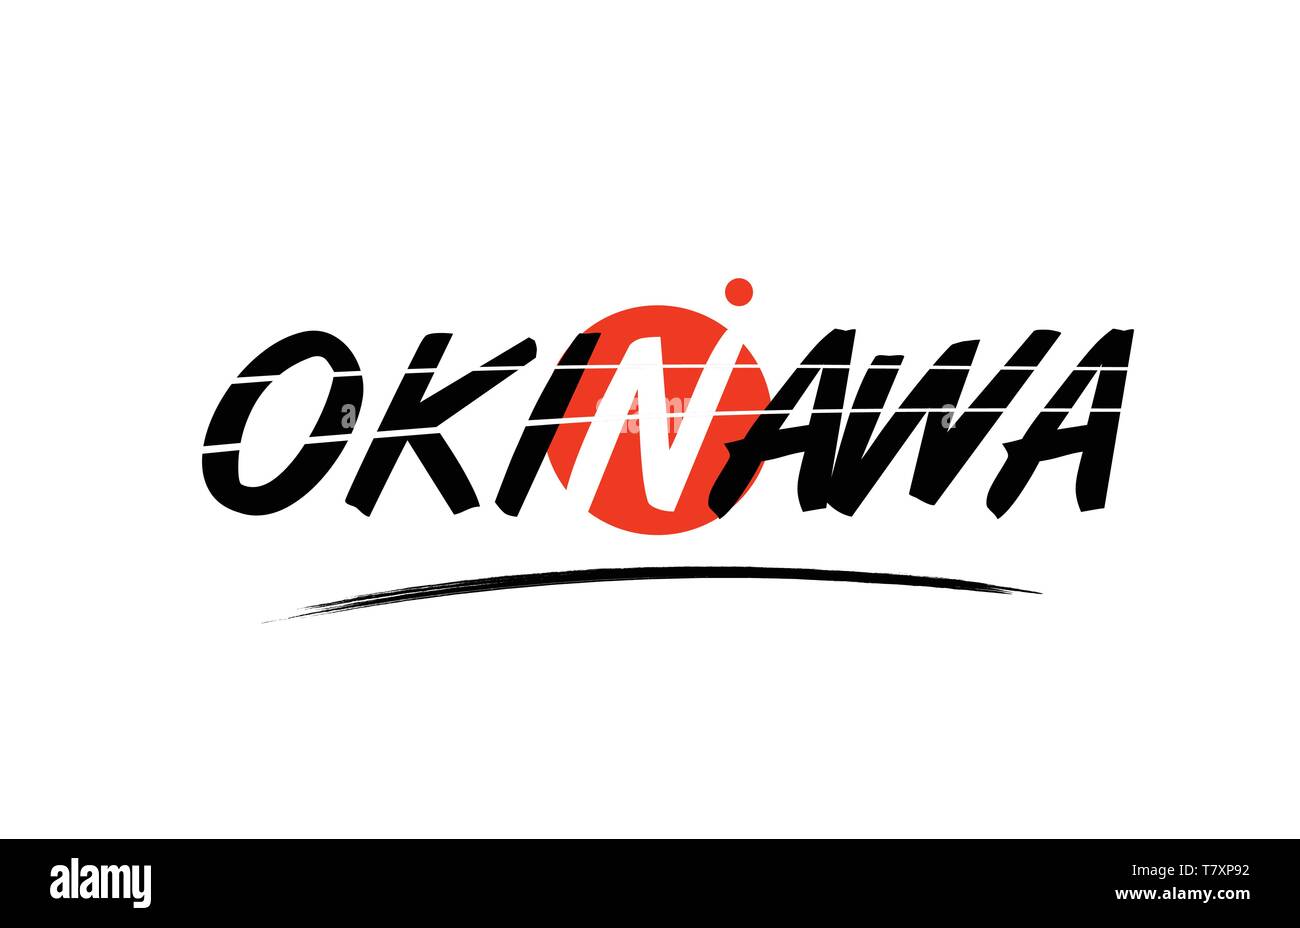 L'okinawa mot du texte sur fond blanc avec le cercle rouge convient pour l'icône de carte ou typographie logo design Illustration de Vecteur